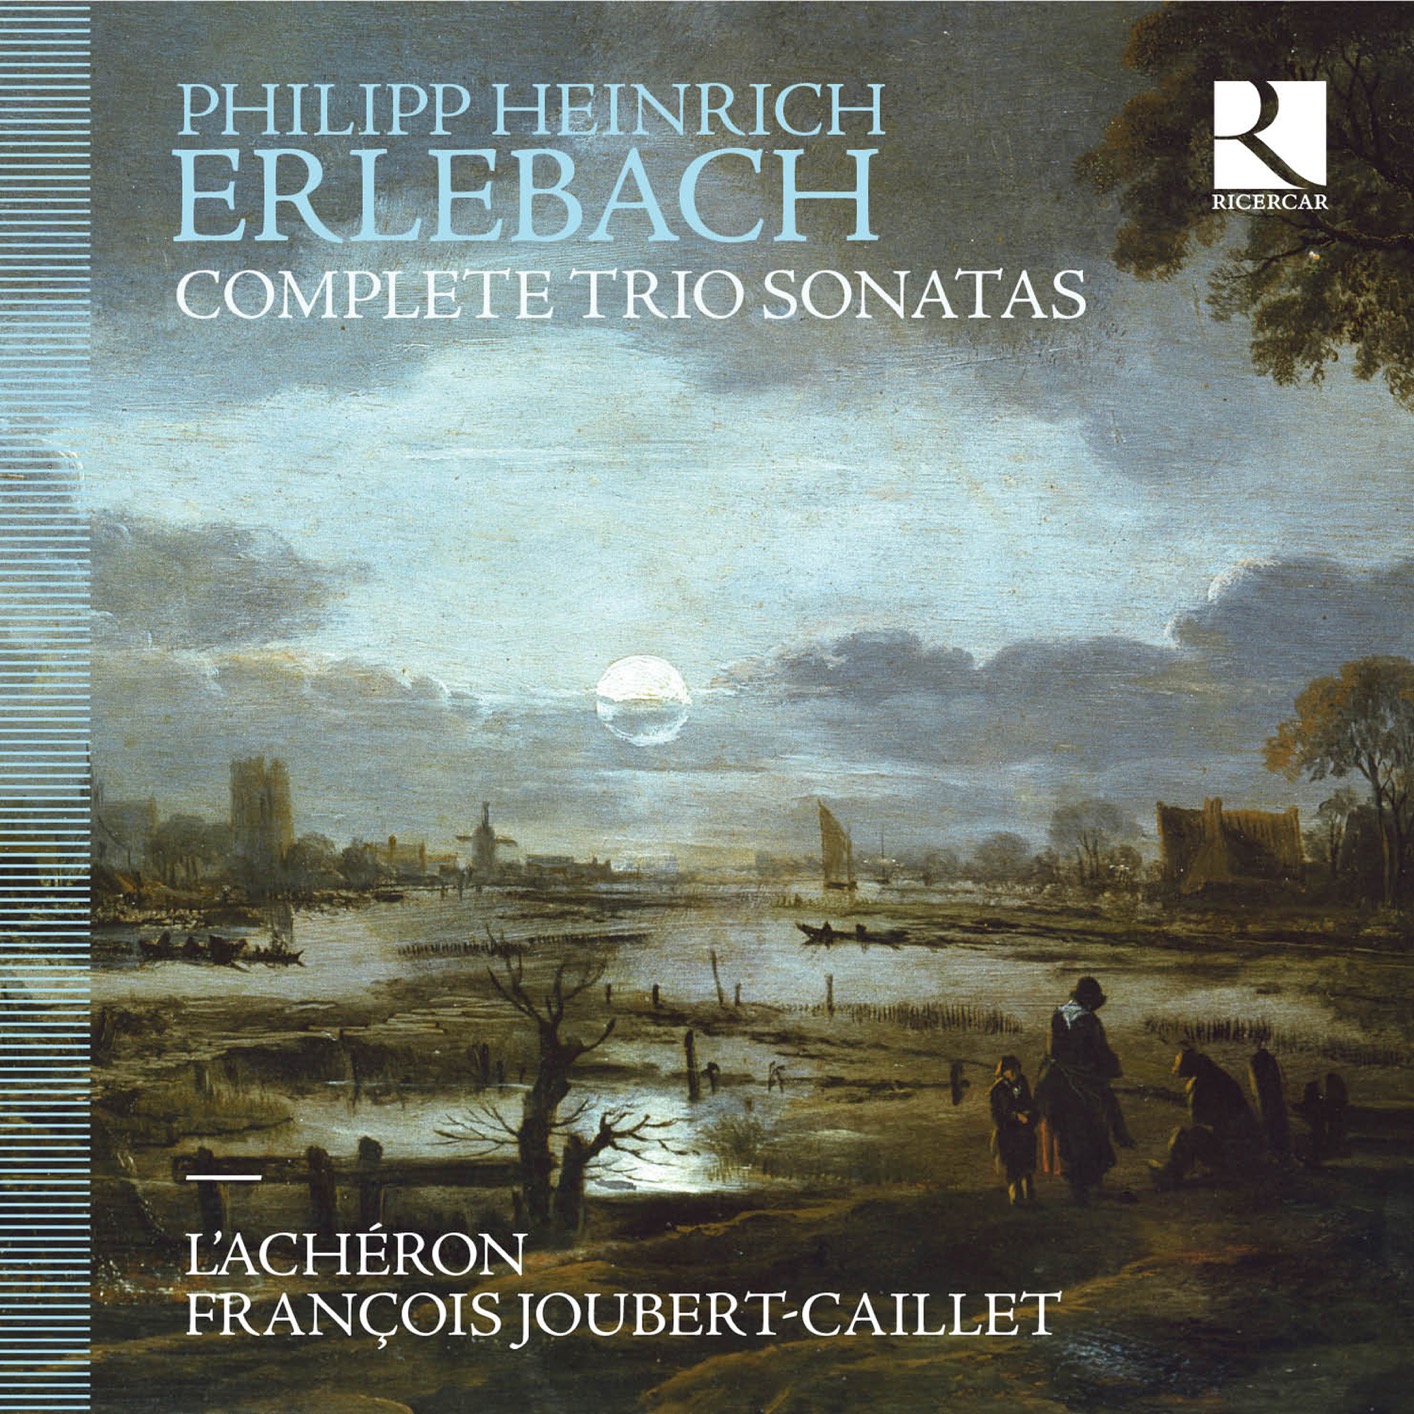 L’Acheeron & Francois Joubert-Caillet - Erlebach: Complete Trio Sonatas (2019) [FLAC 24bit/96kHz]